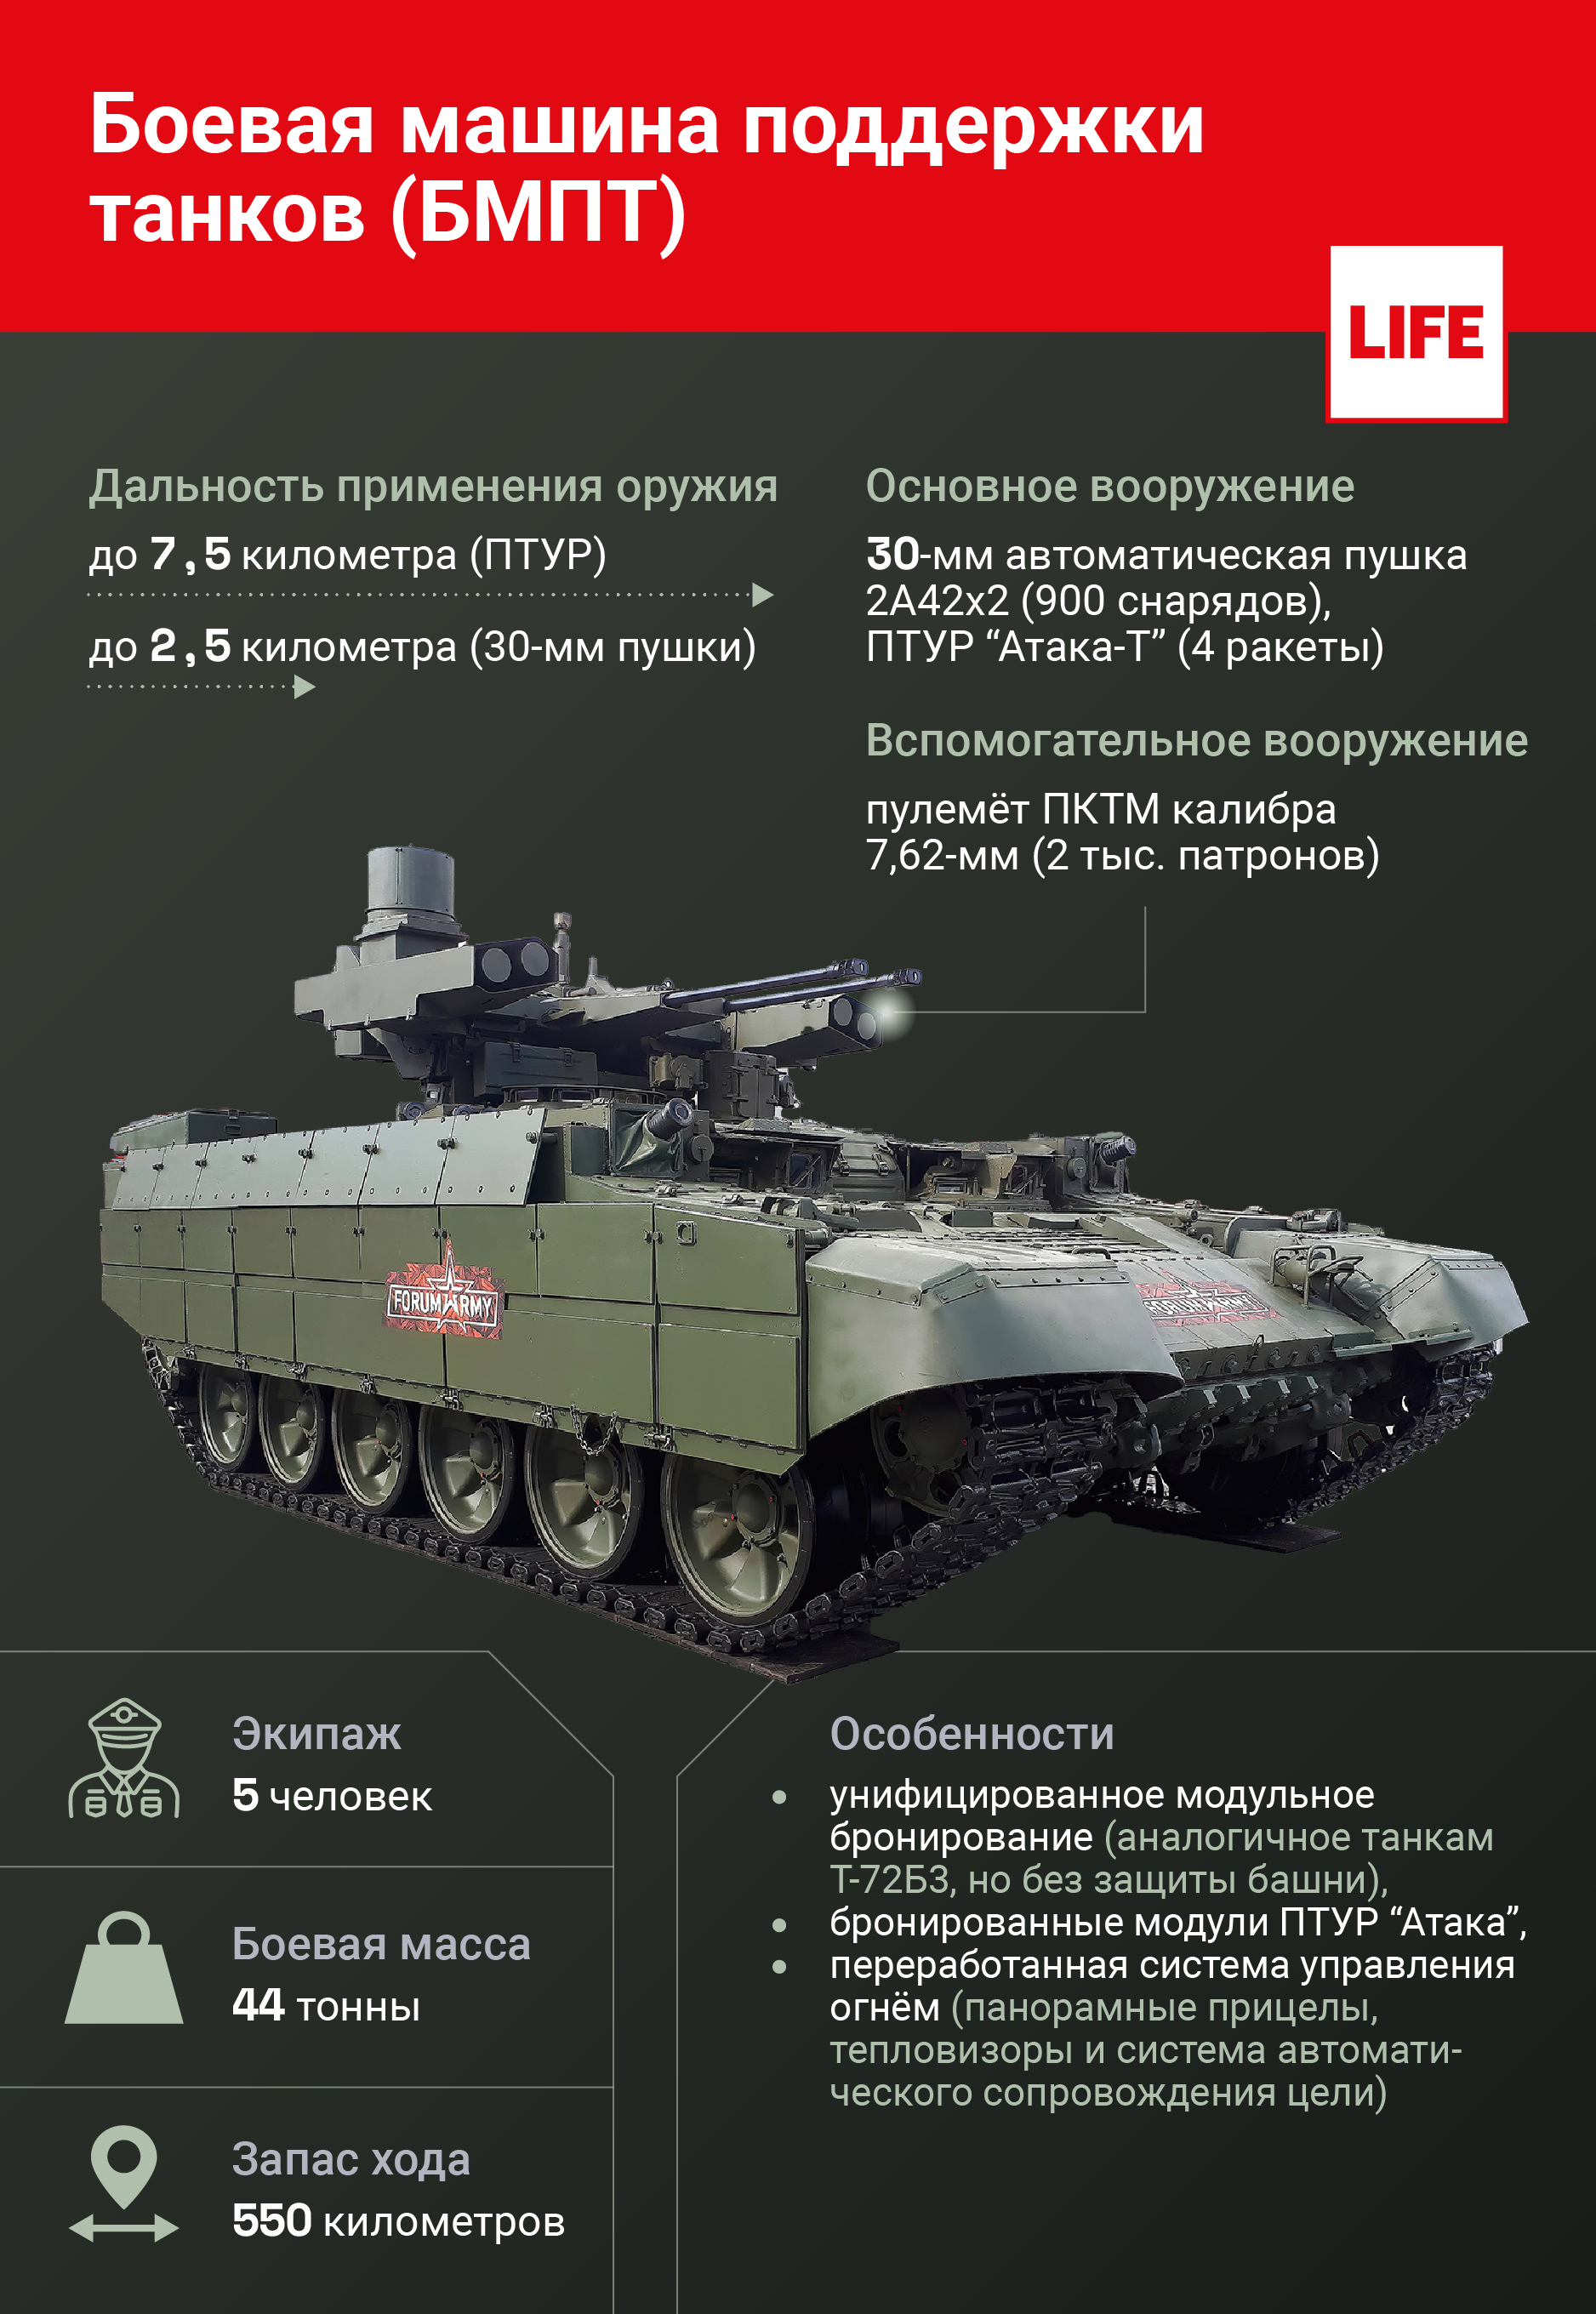 Боевая машина поддержки танков (БМПТ). Инфографика © LIFE